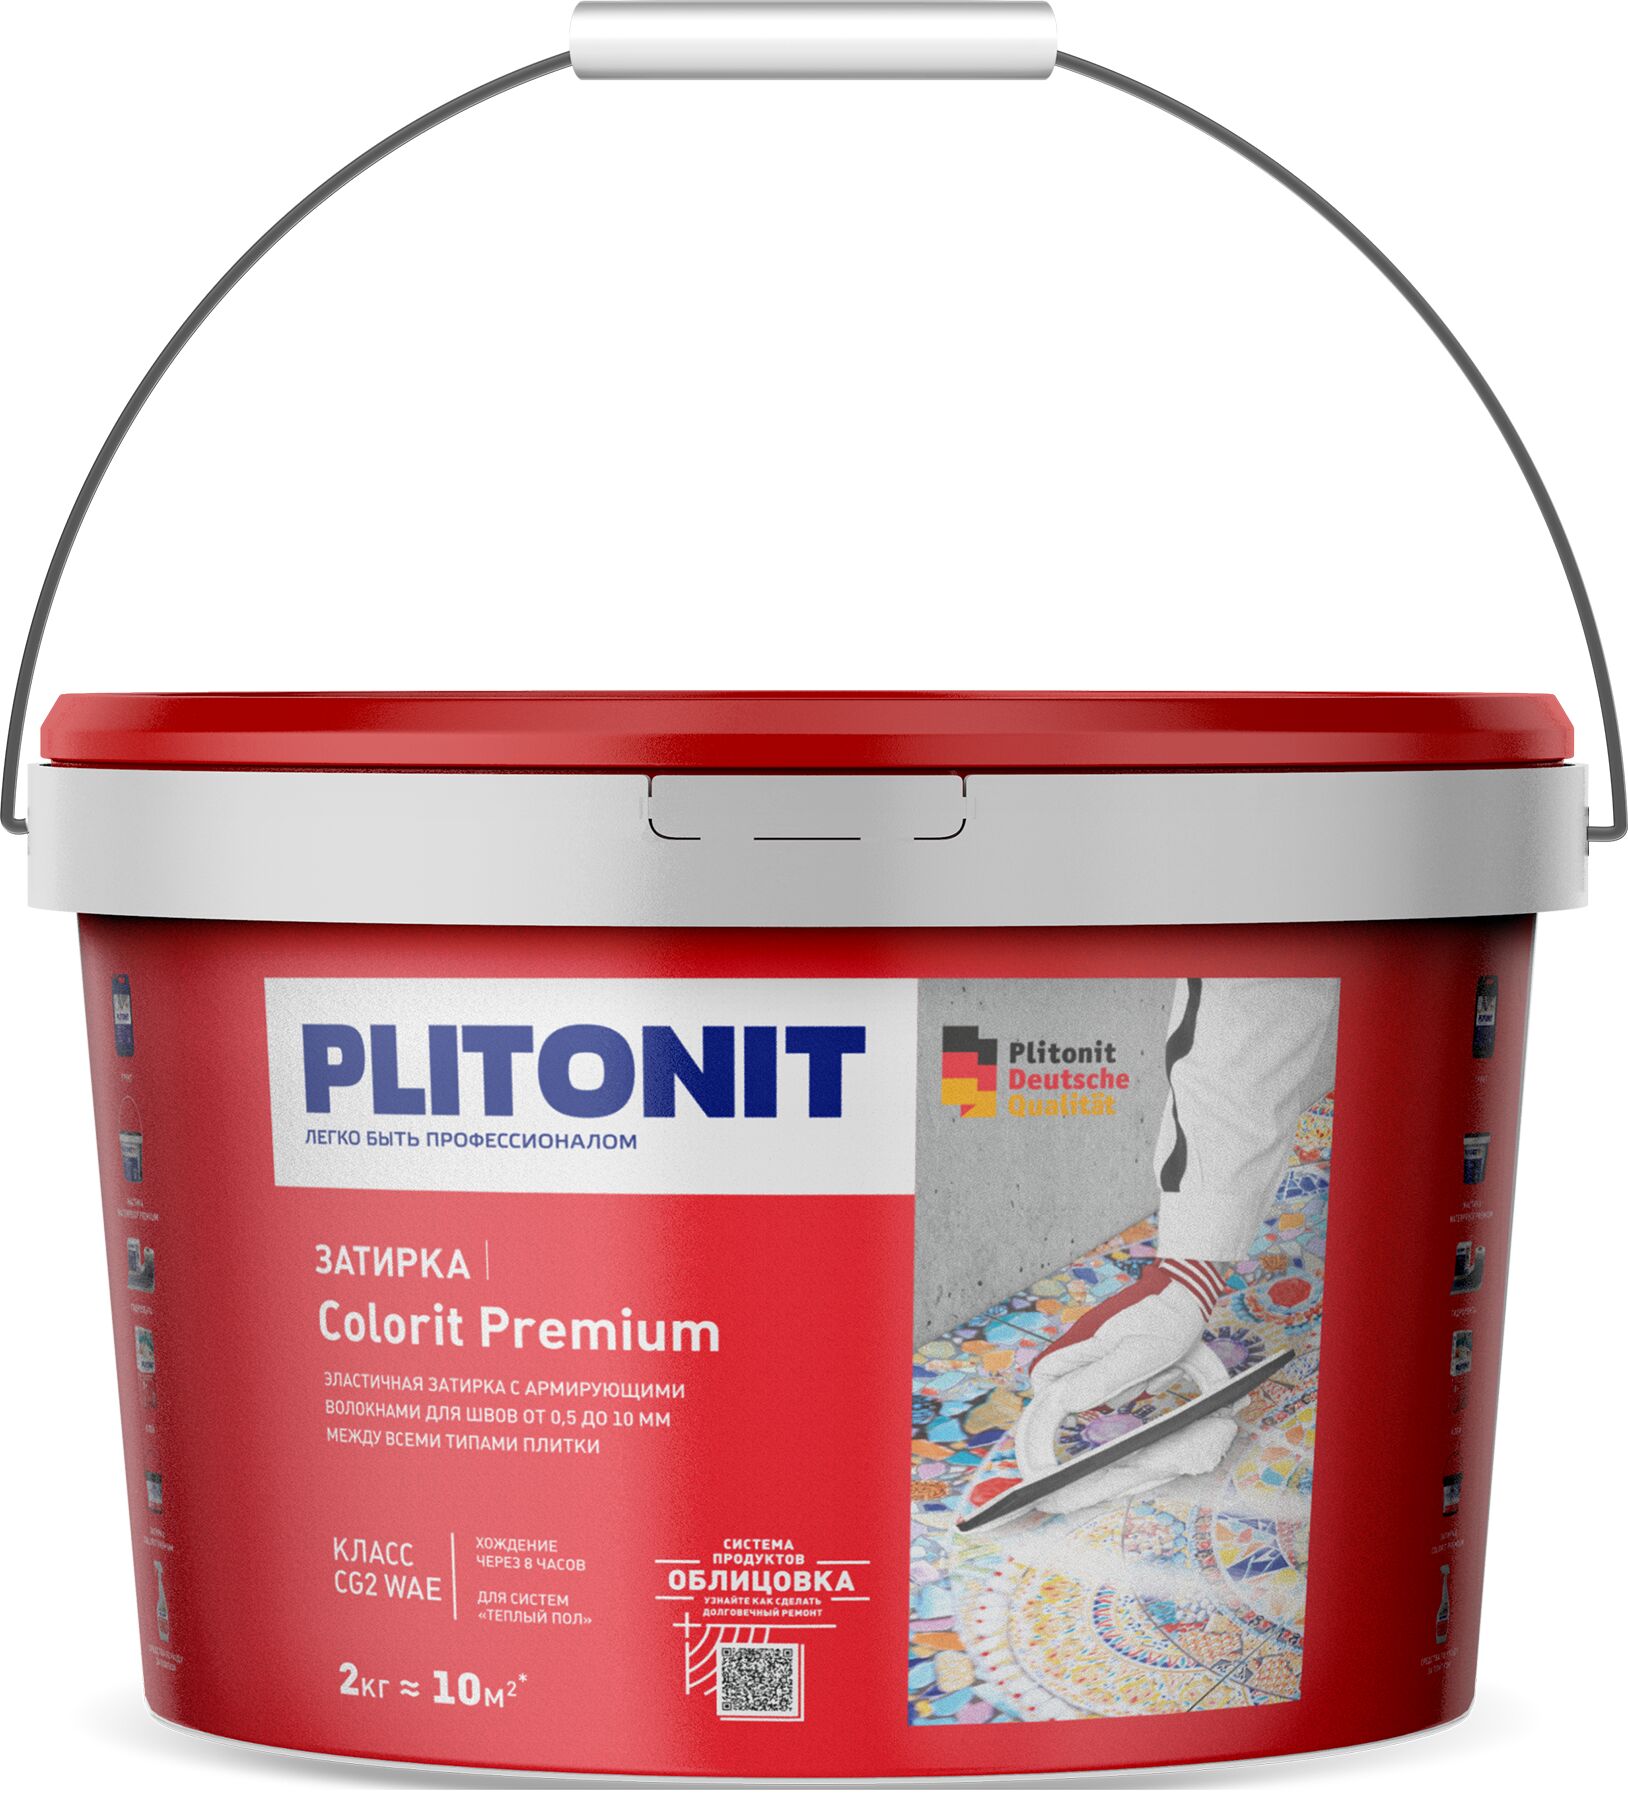 PLITONIT COLORIT Premium затирка биоцидная (0,5-13 мм) КАКАО -2, PLITONIT COLORIT Premium затирка биоцидная (0,5-13 мм) КАКАО -2